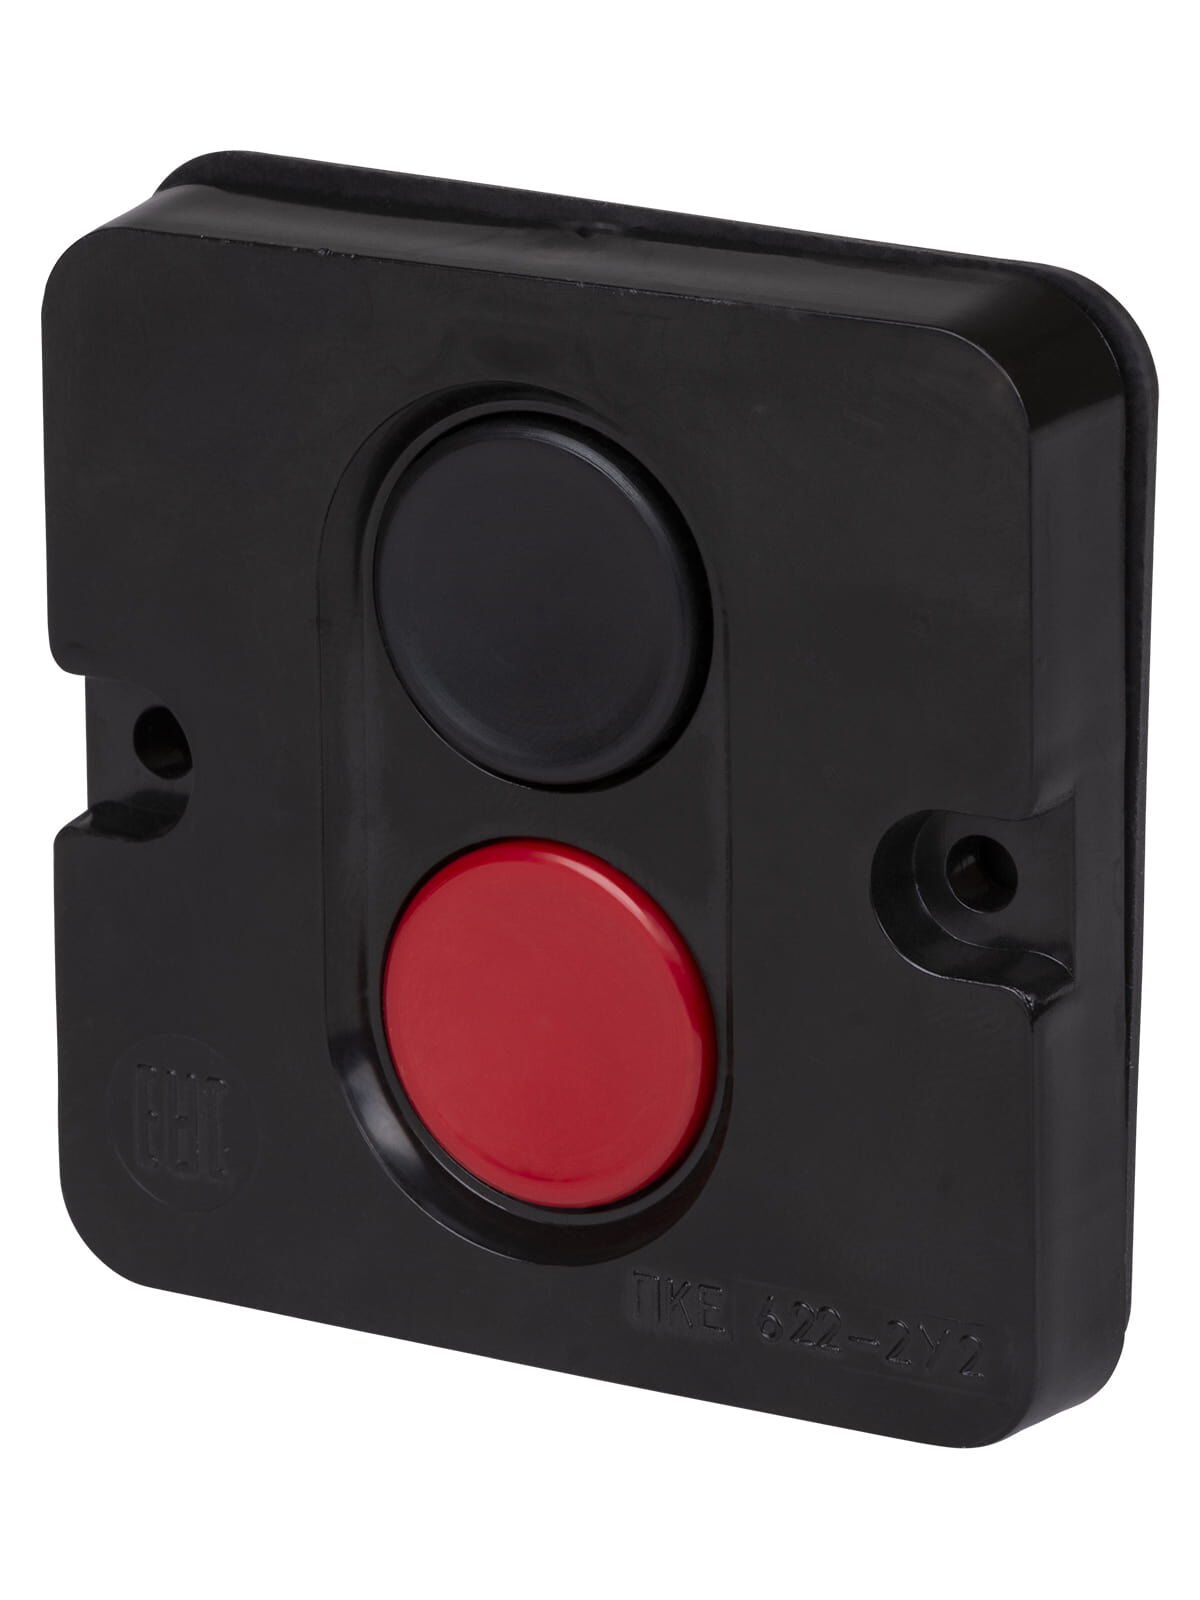 Пост кнопочный ПКЕ 622 У2 красная и черная кнопки, IP54 красная и черная кнопки, IP54